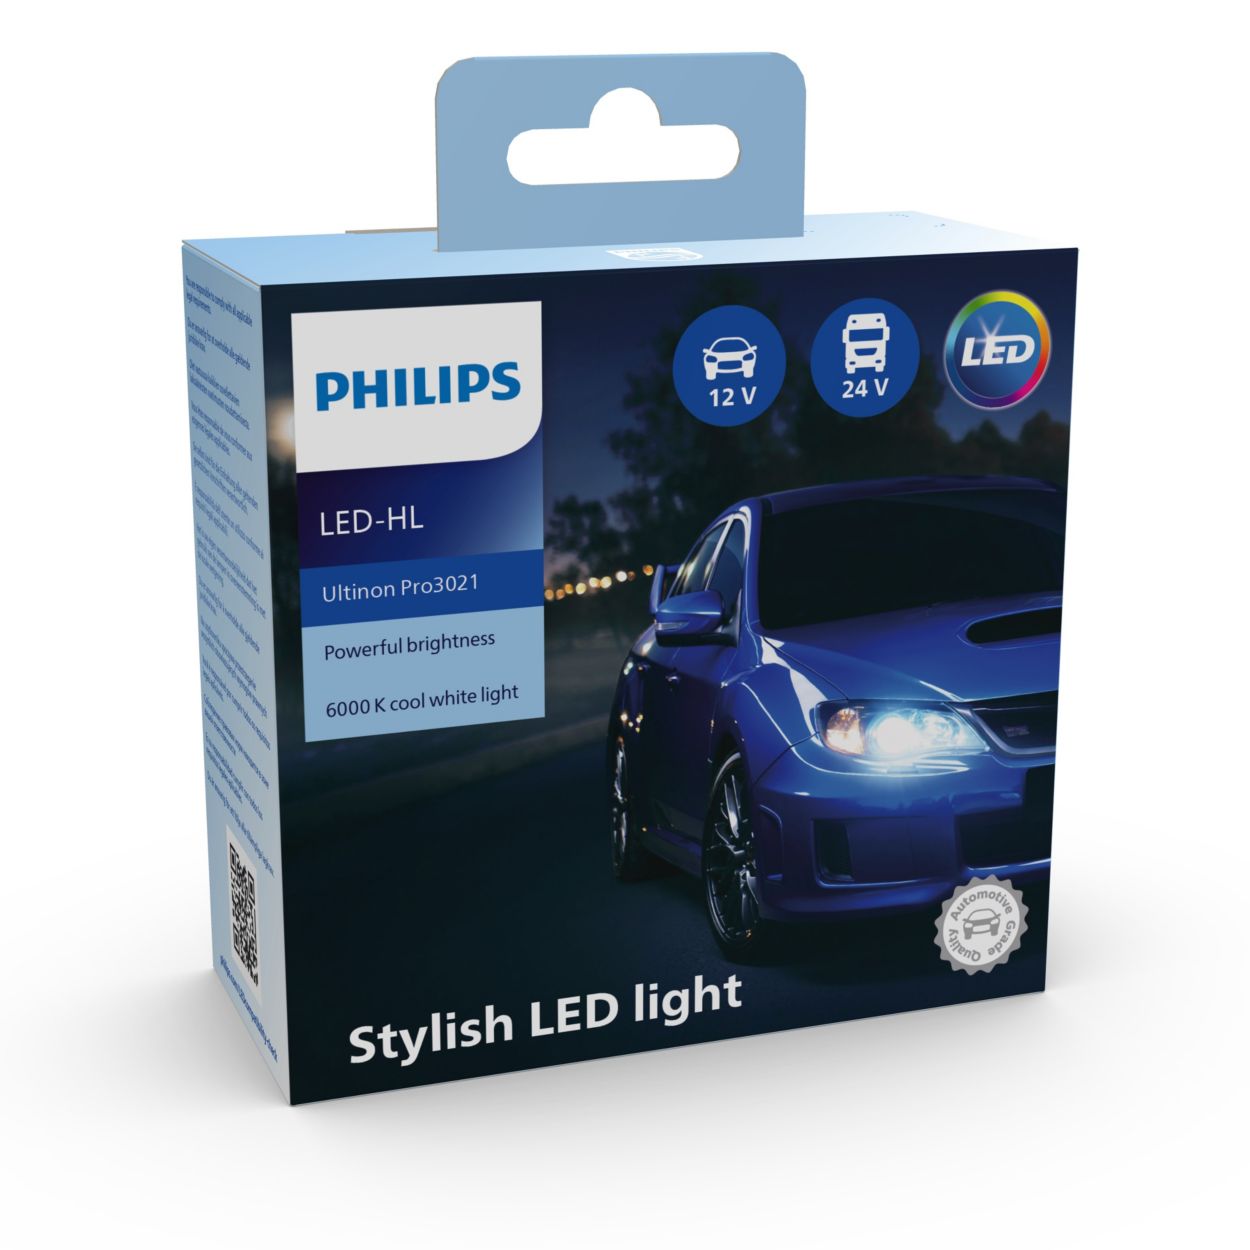 Philips LED Ultinon Pro3101 H1 Car LED Head Light 6000K Cold White